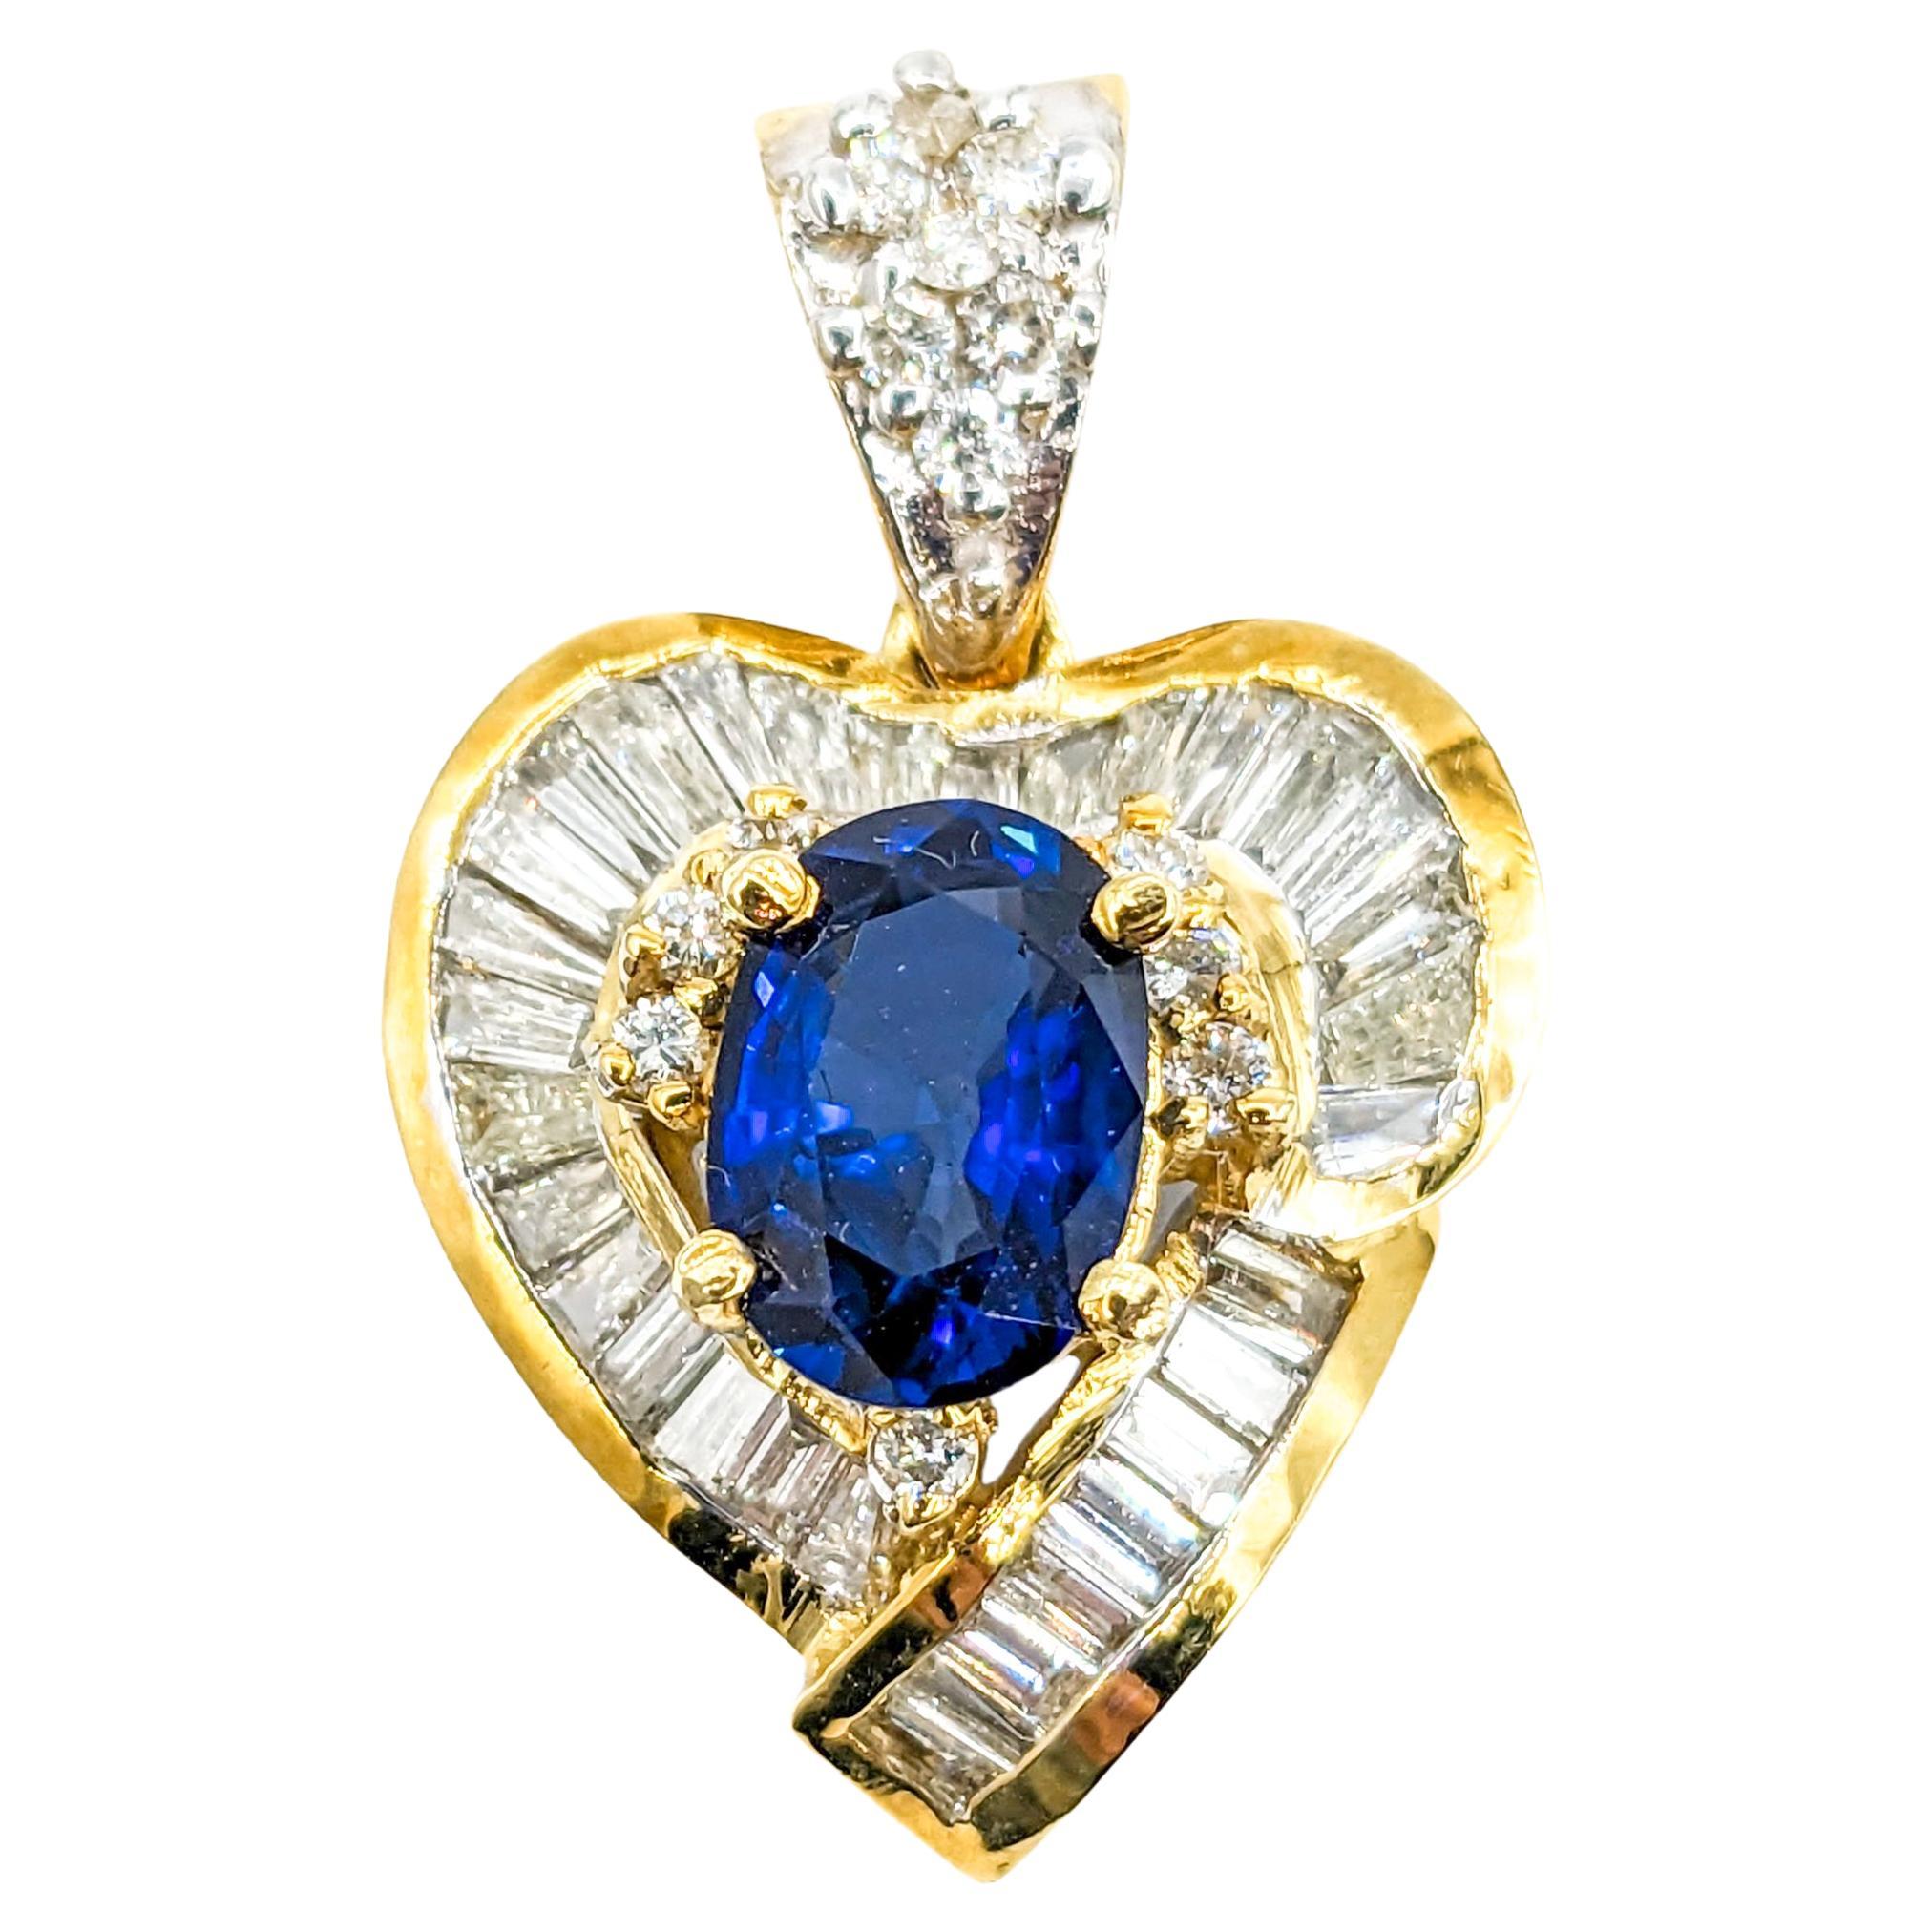 Fantastique pendentif cœur en or jaune 18 carats, saphir bleu et diamants